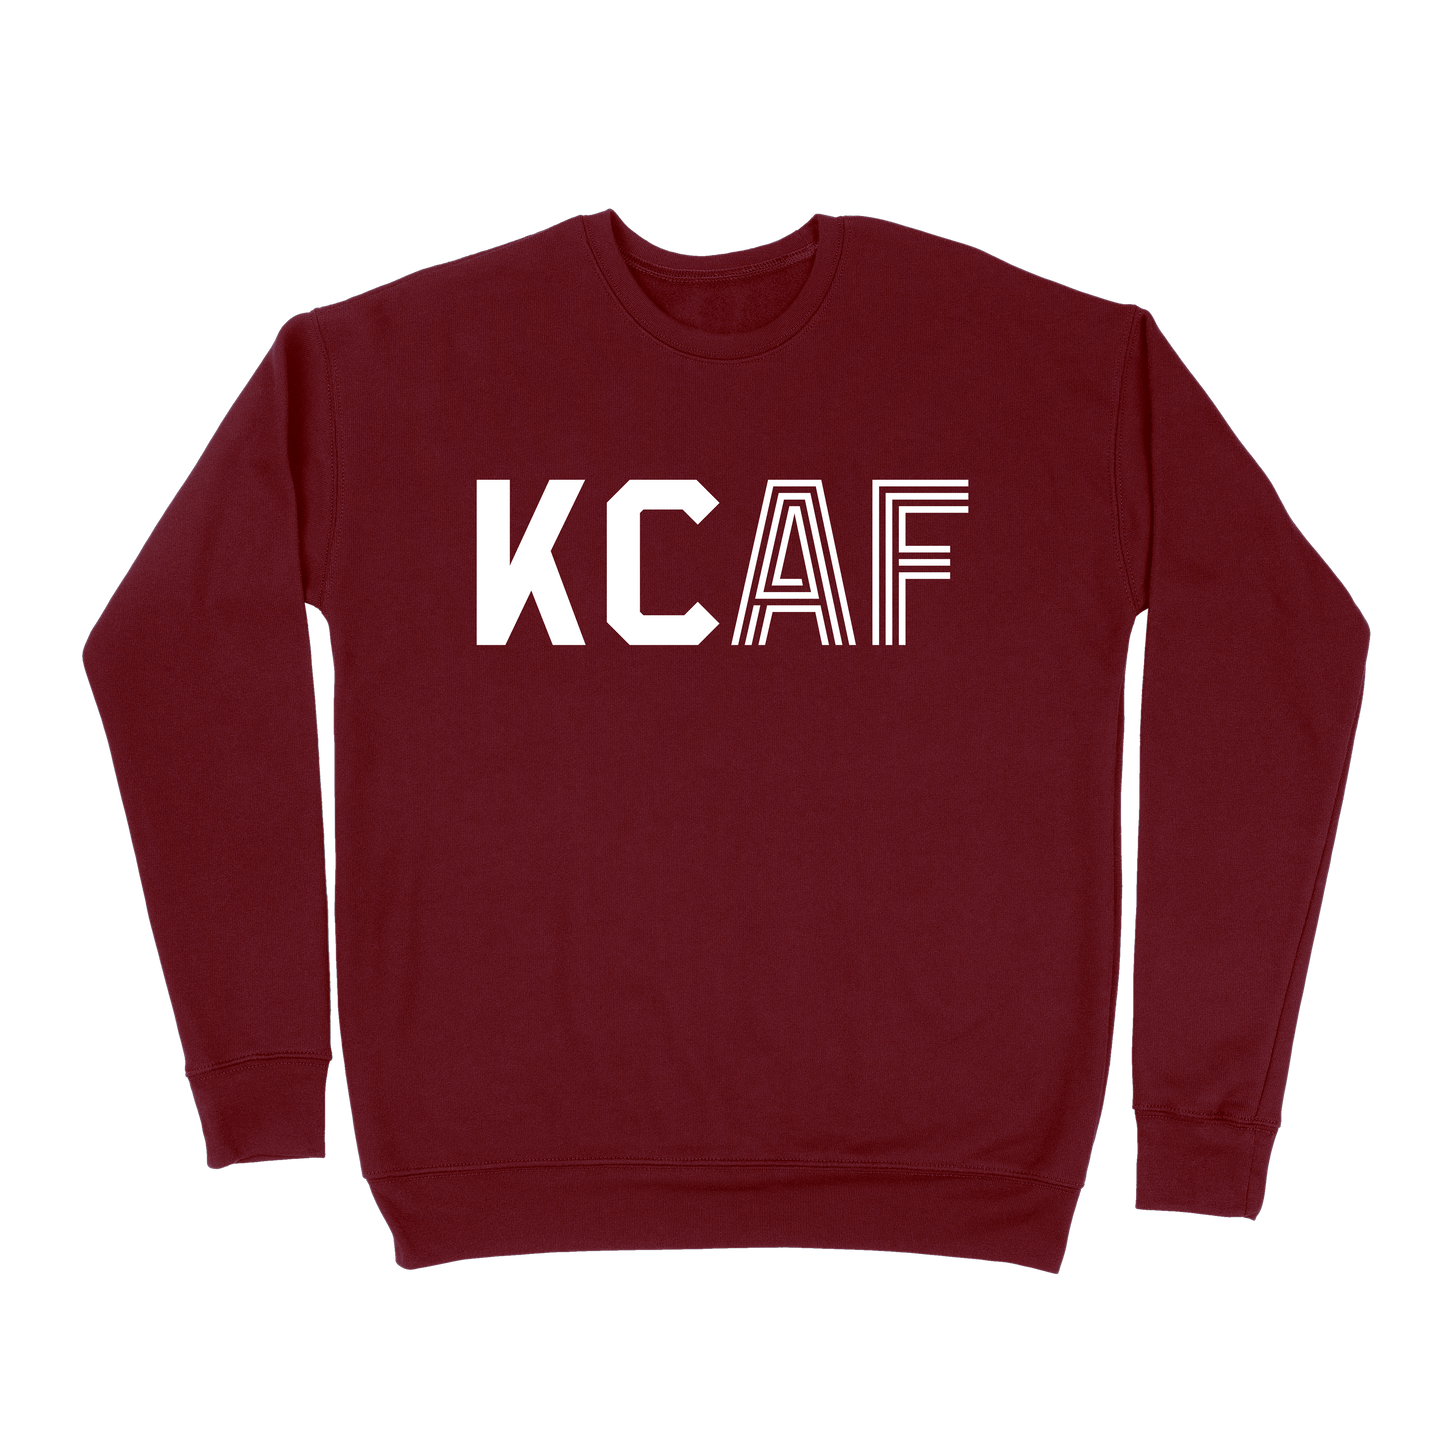 KCAF Sweatshirt - Maroon